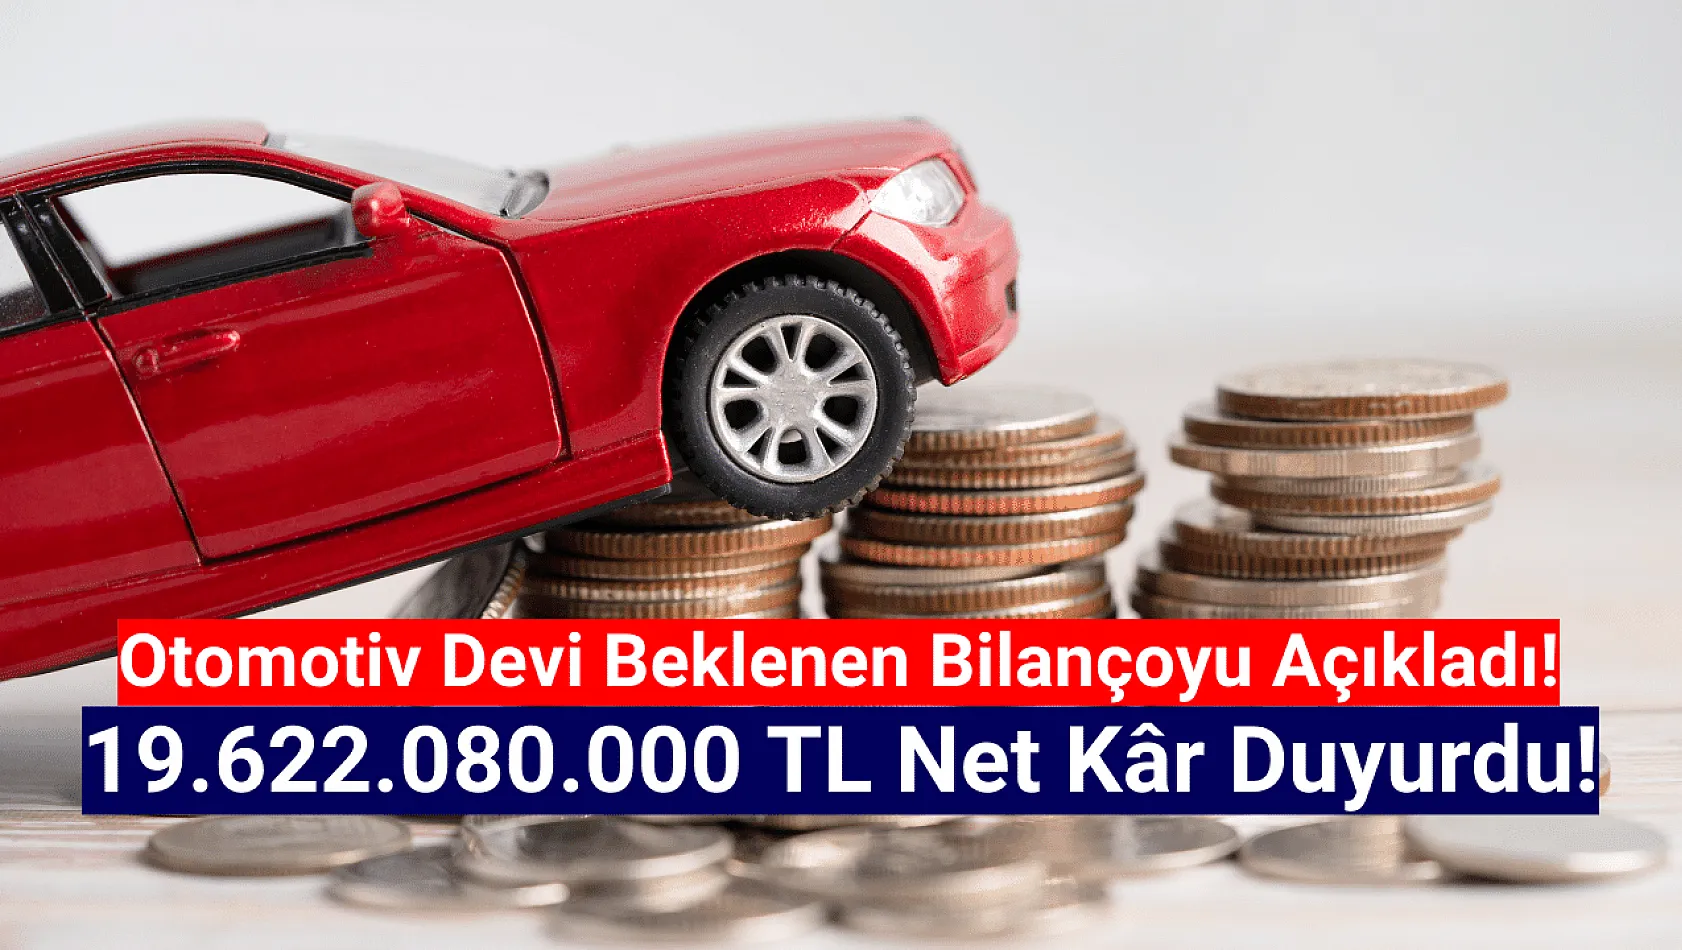 Otomotiv devi 19.622.080.000 TL net kâr açıkladı!